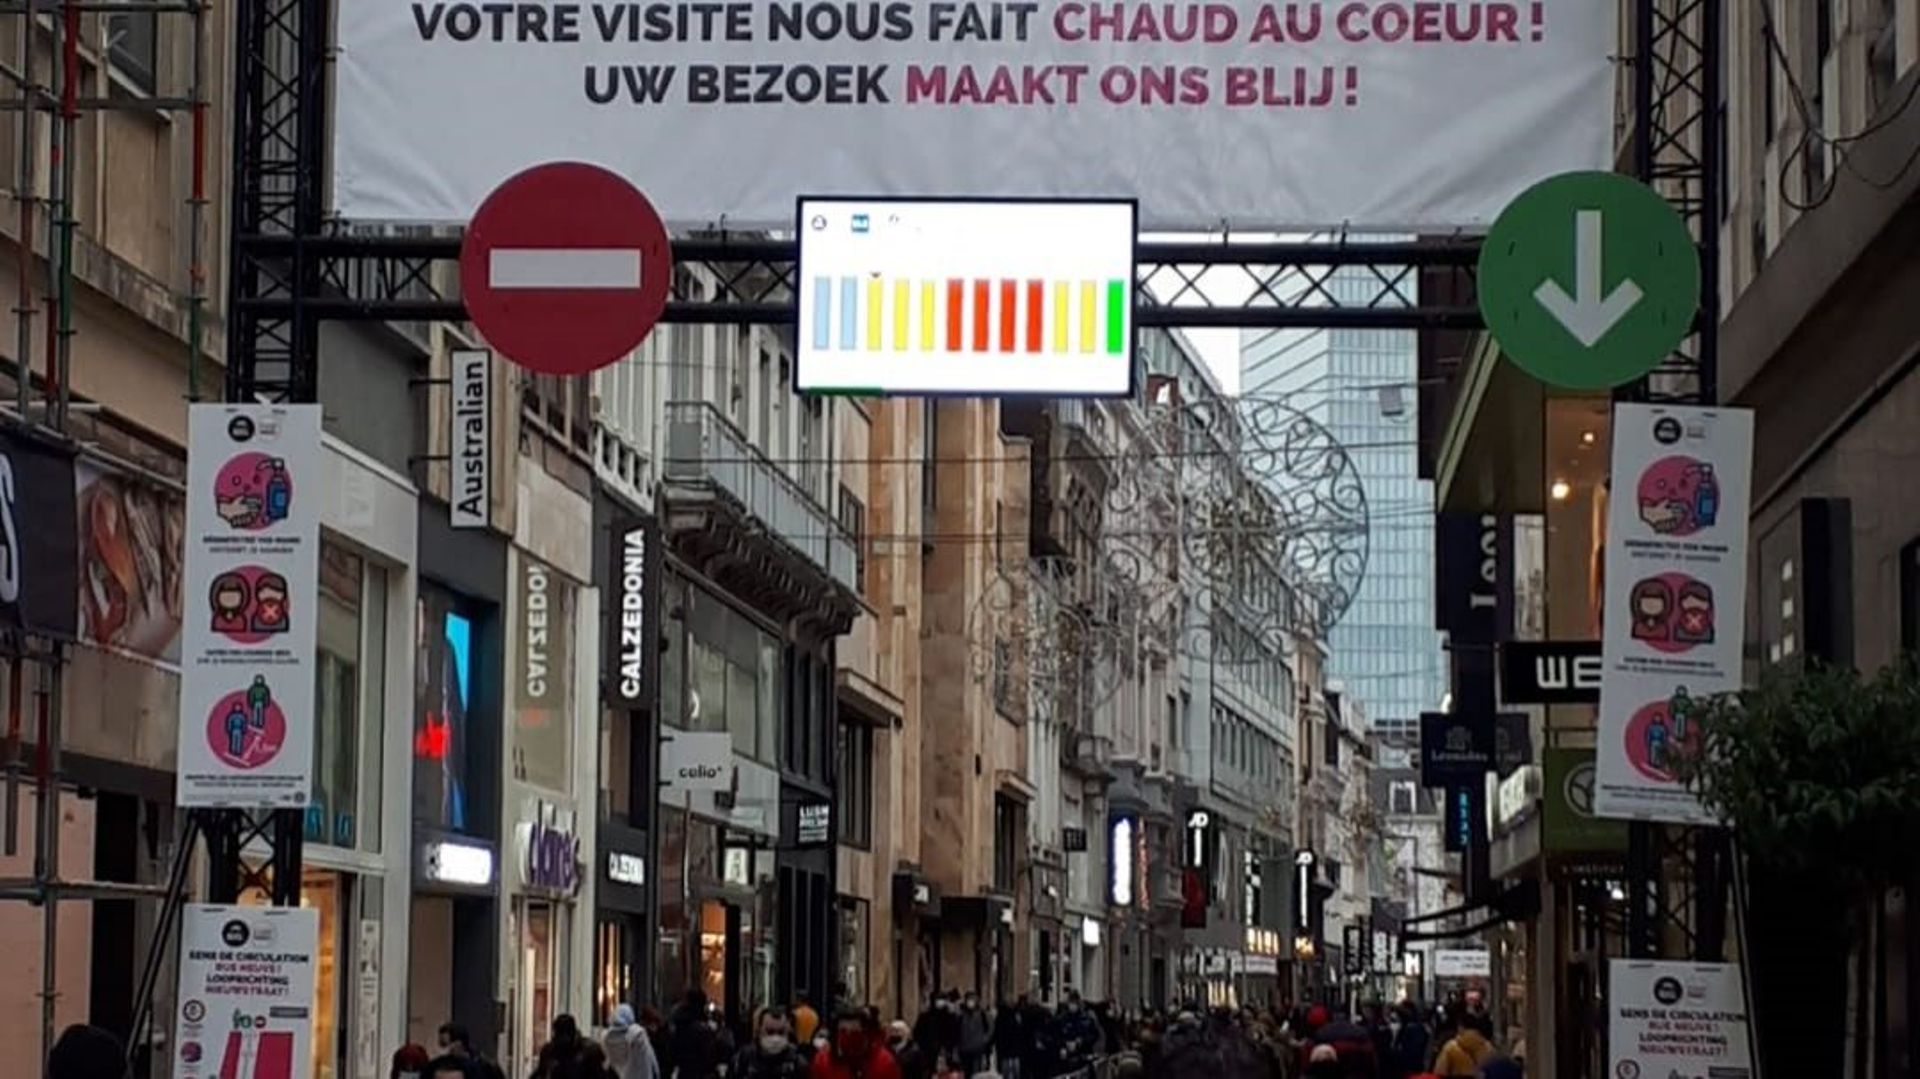 https://www.rueneuvebruxelles.be : un site web pour connaître en temps réel l'affluence à la rue Neuve à Bruxelles